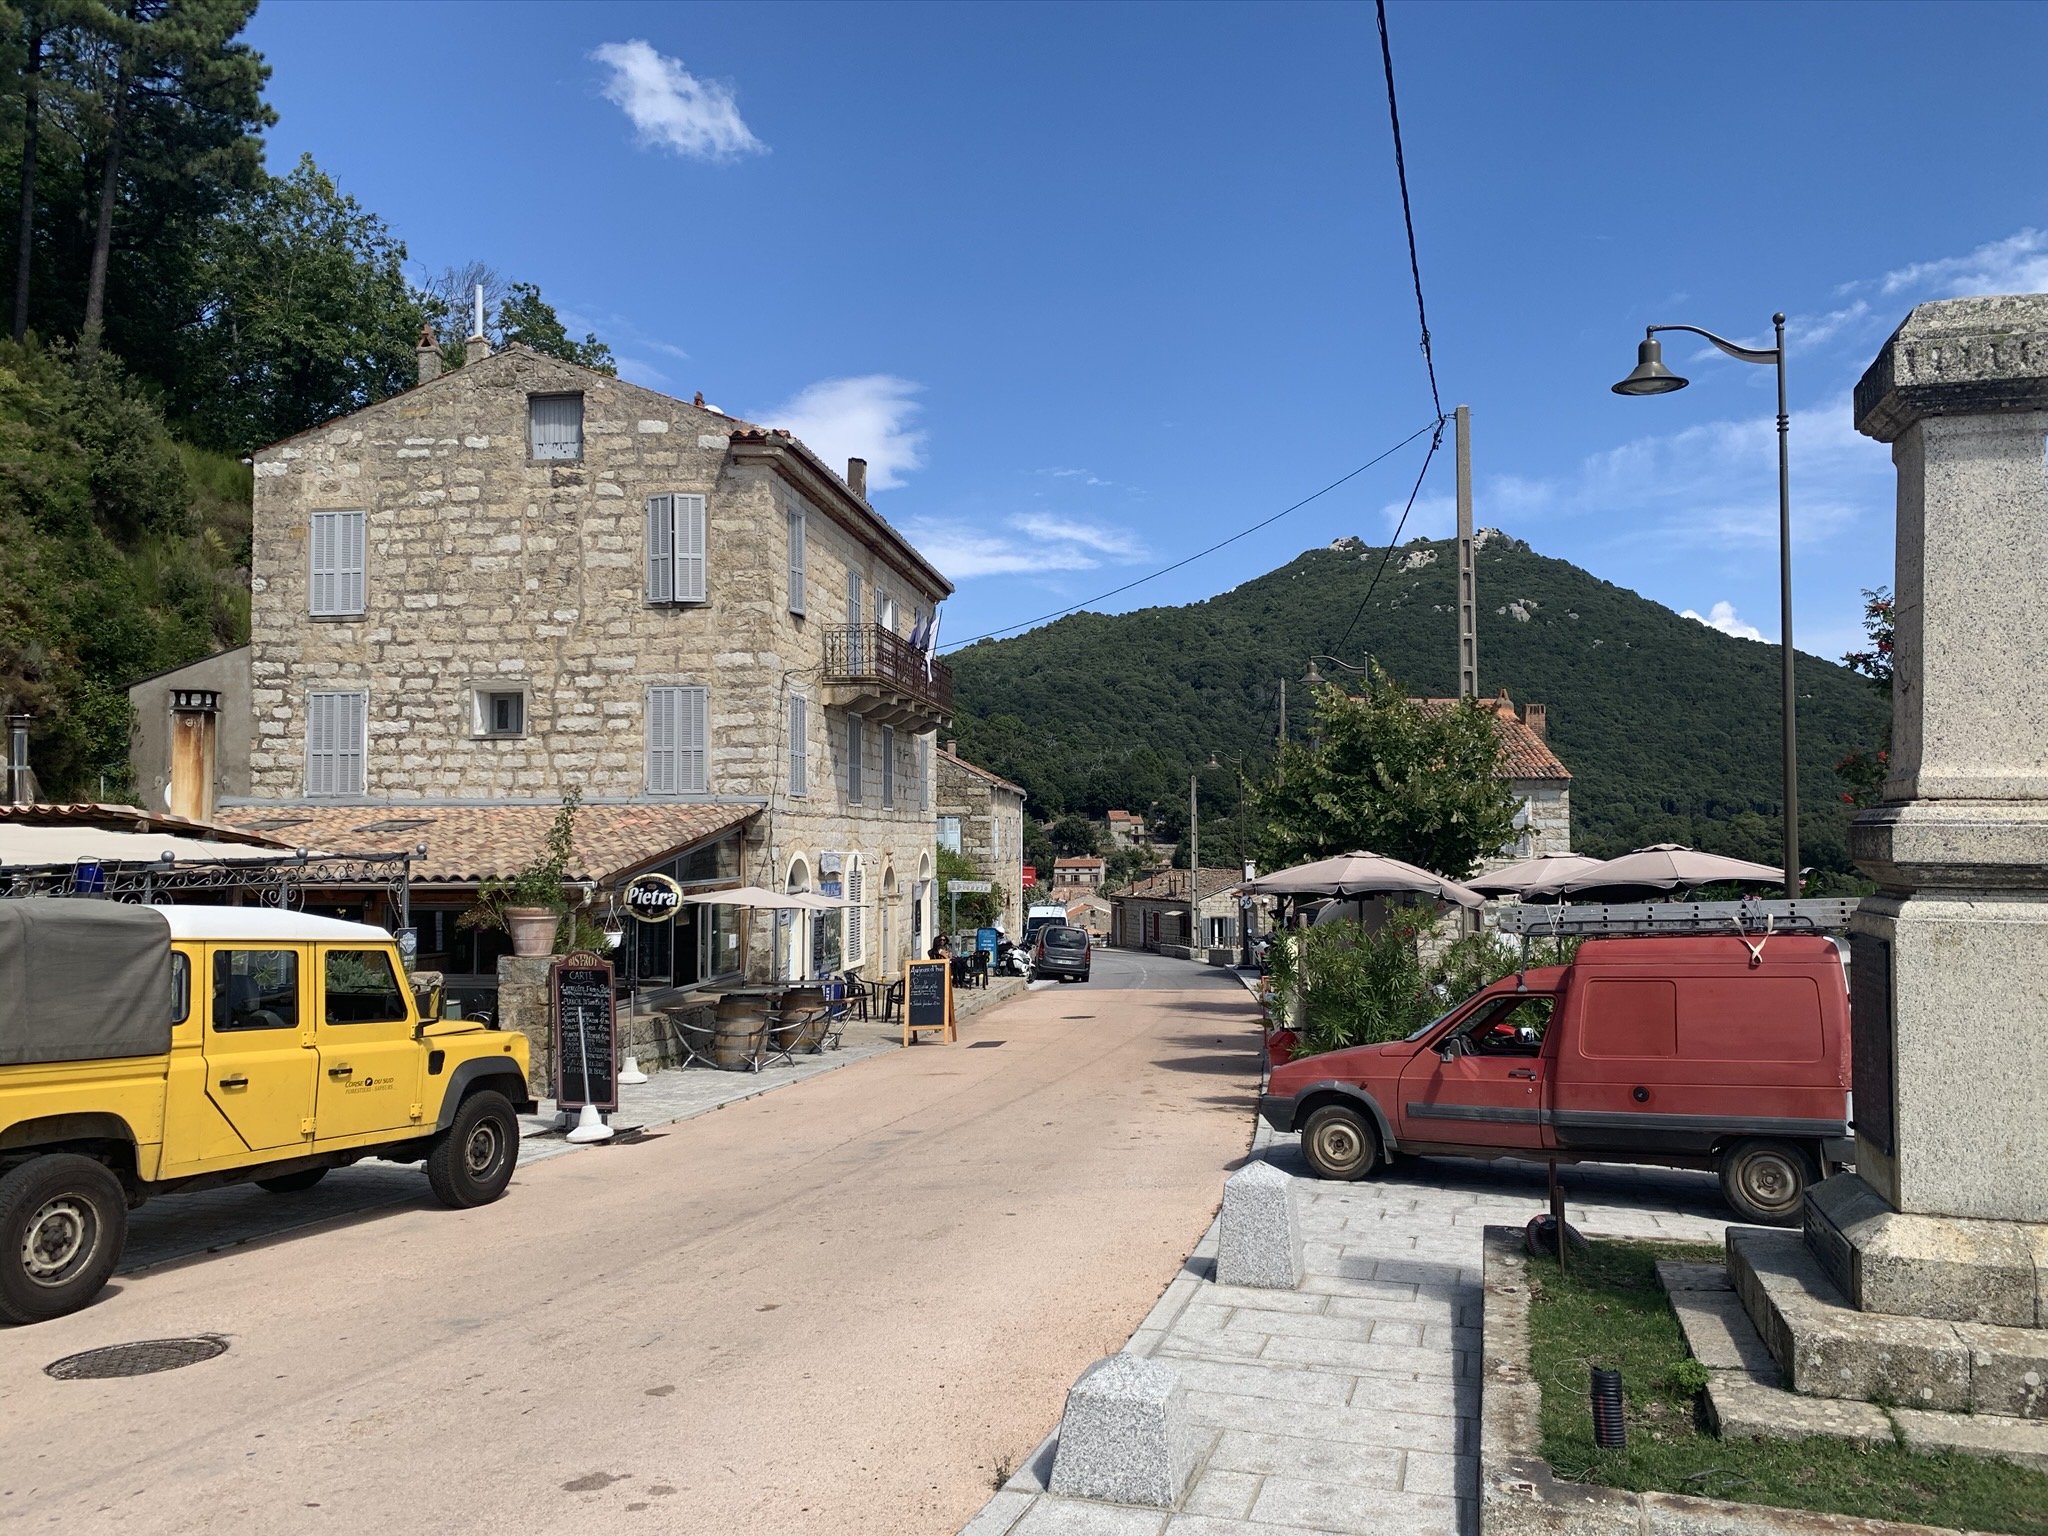 Klein verlaten dorp met enkele auto's in het binnenland van Corsica